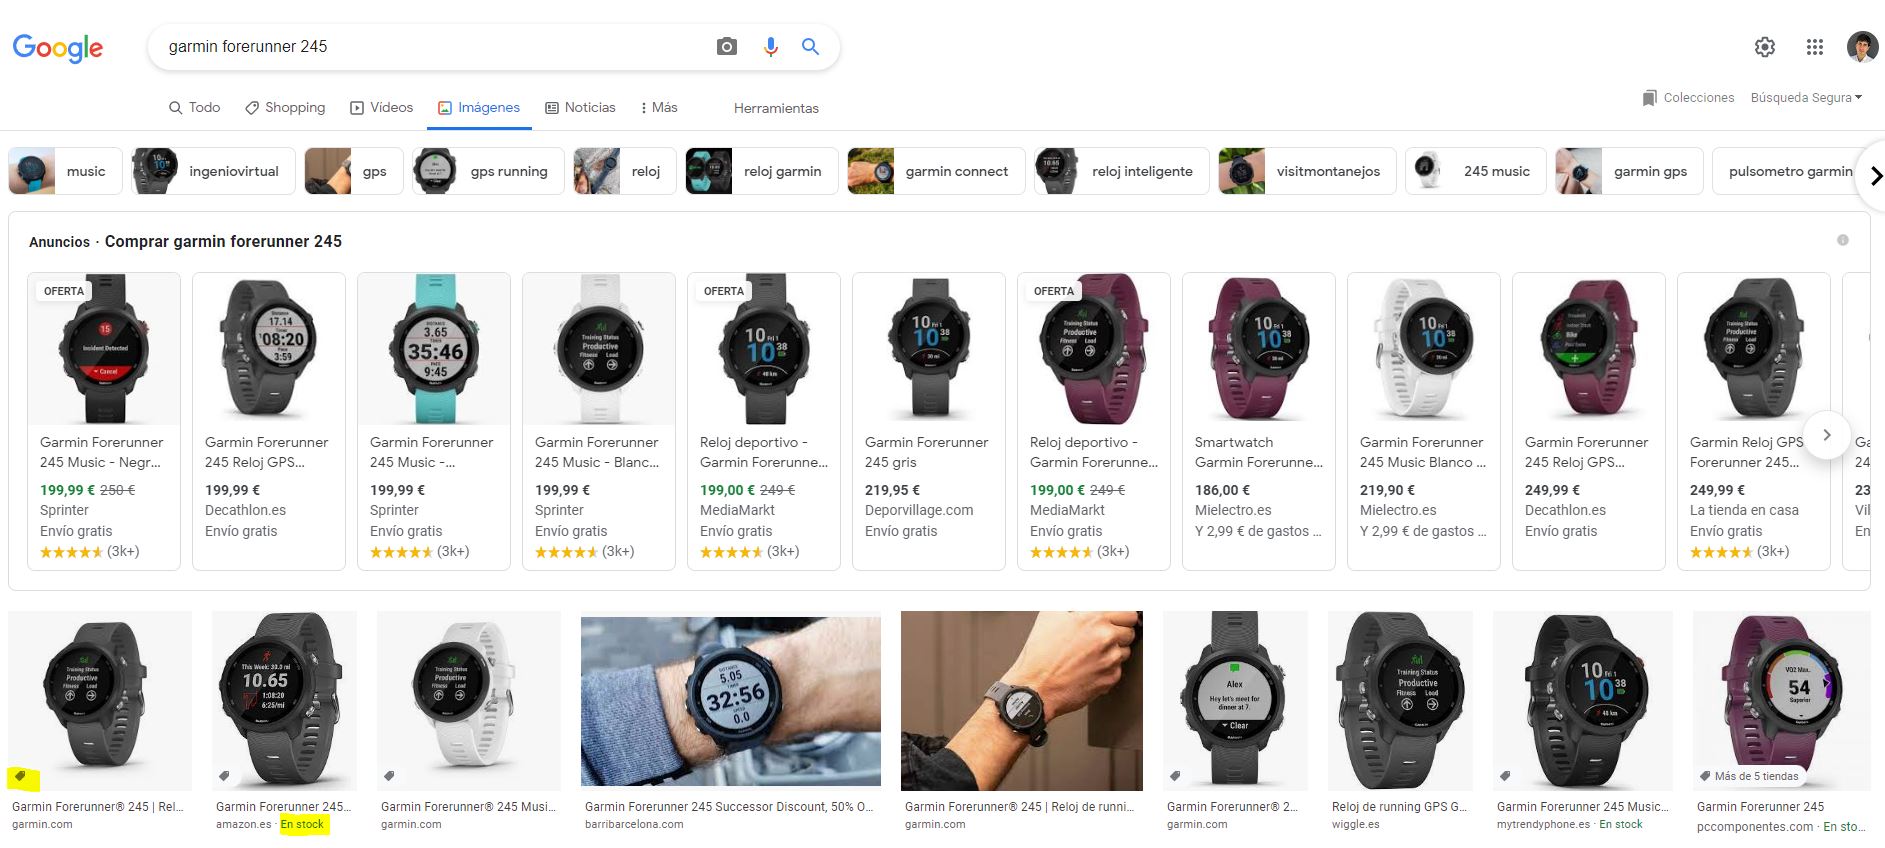 google shopping on google images